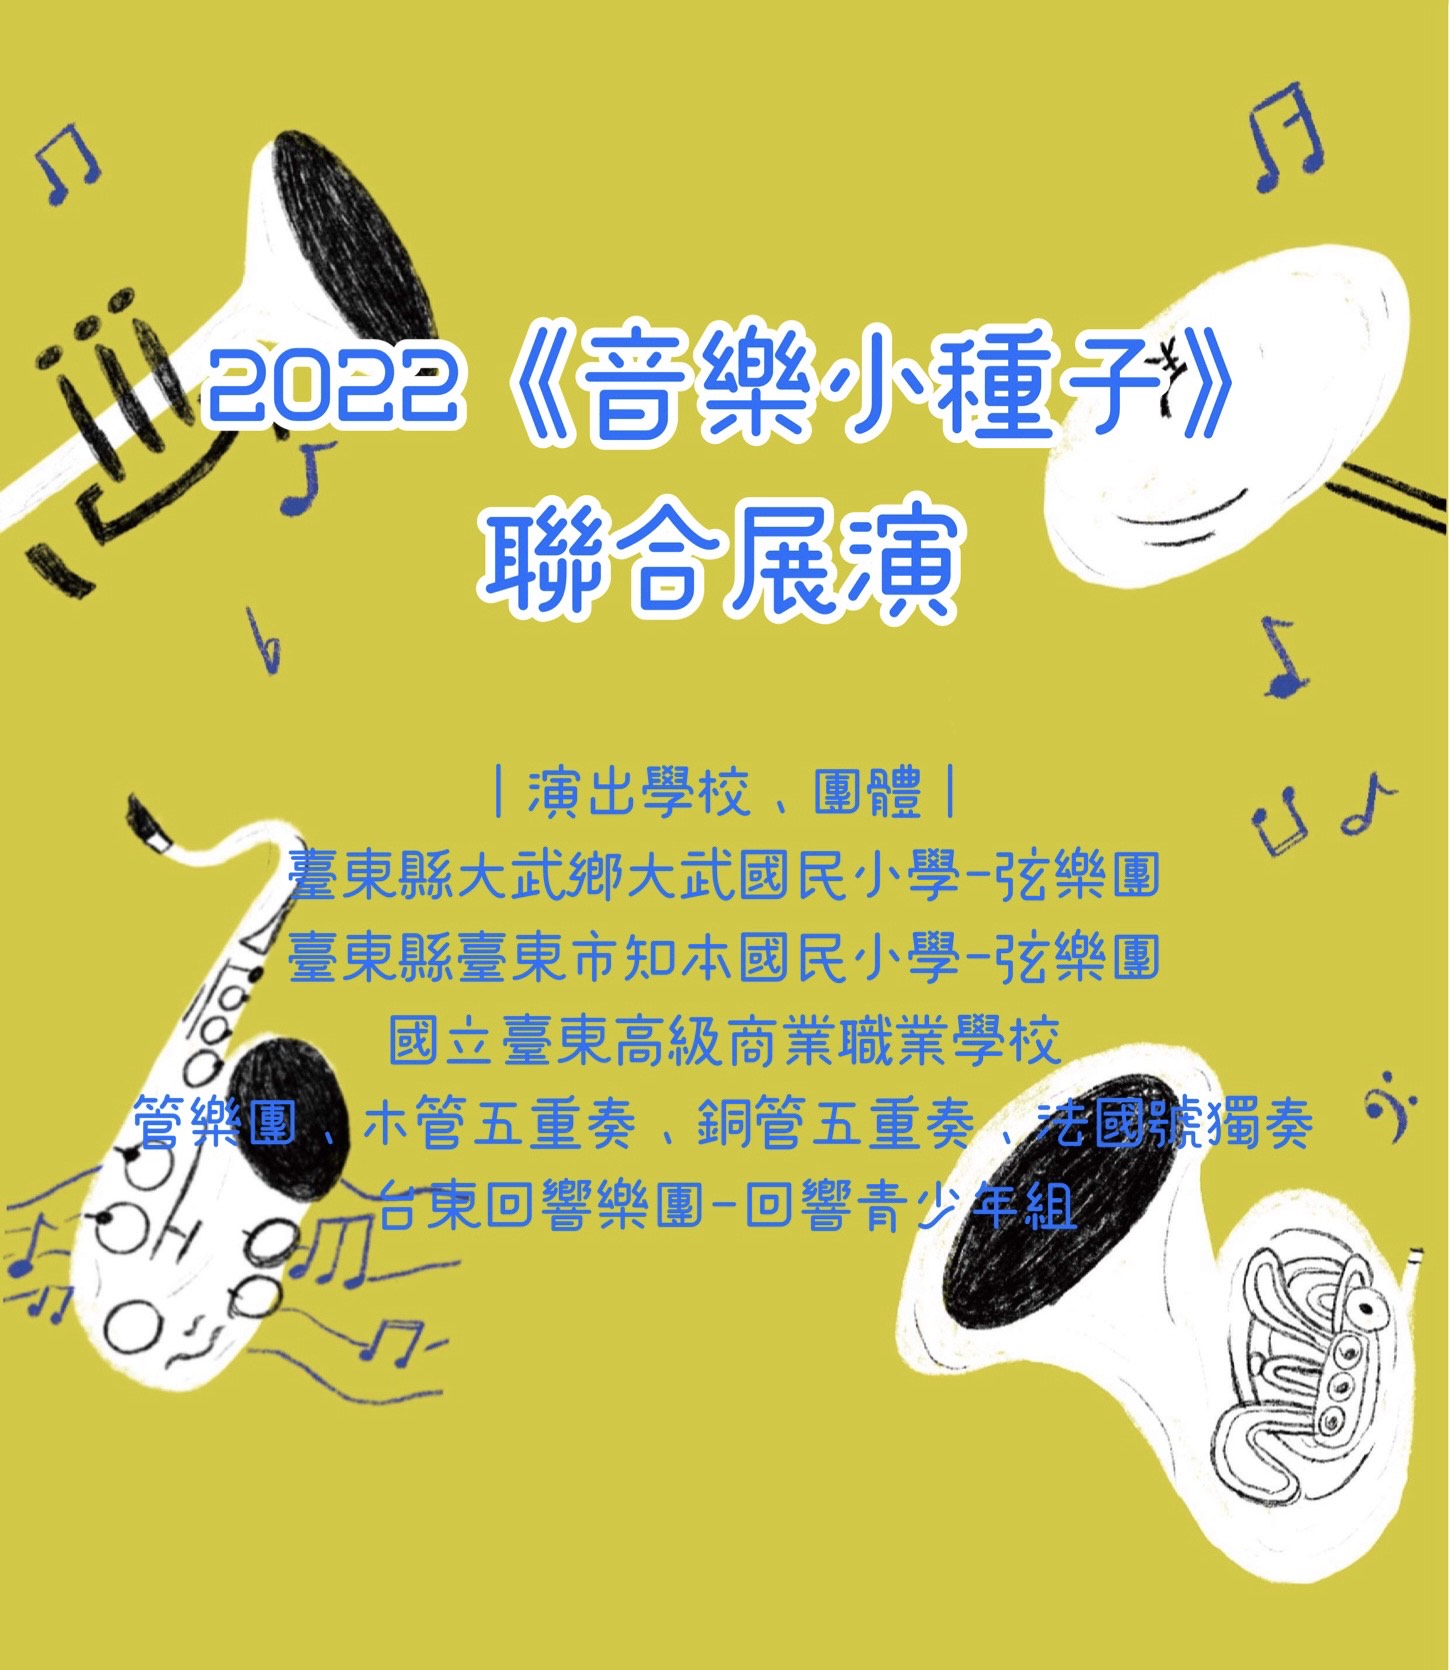 【音樂】2022《音樂小種子》聯合展演